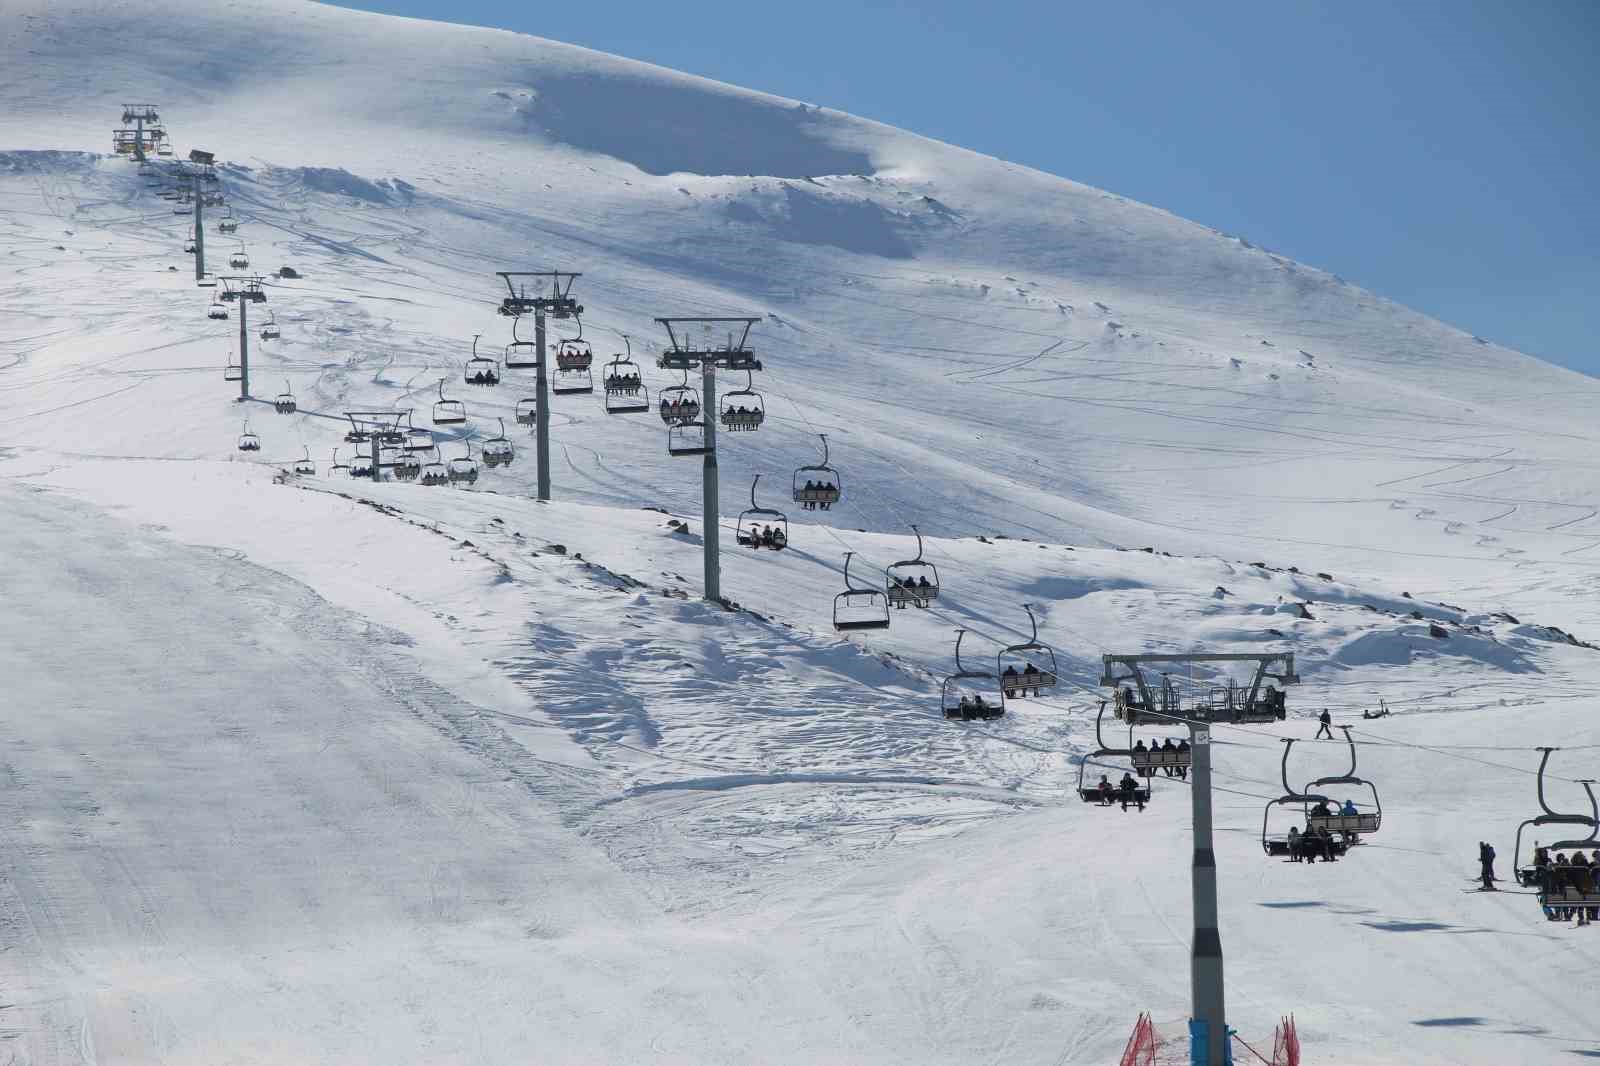 Bingöl’de Hesarek Kayak Merkezi "Kültür ve Turizm Koruma ve Gelişim Bölgesi" ilan edildi
